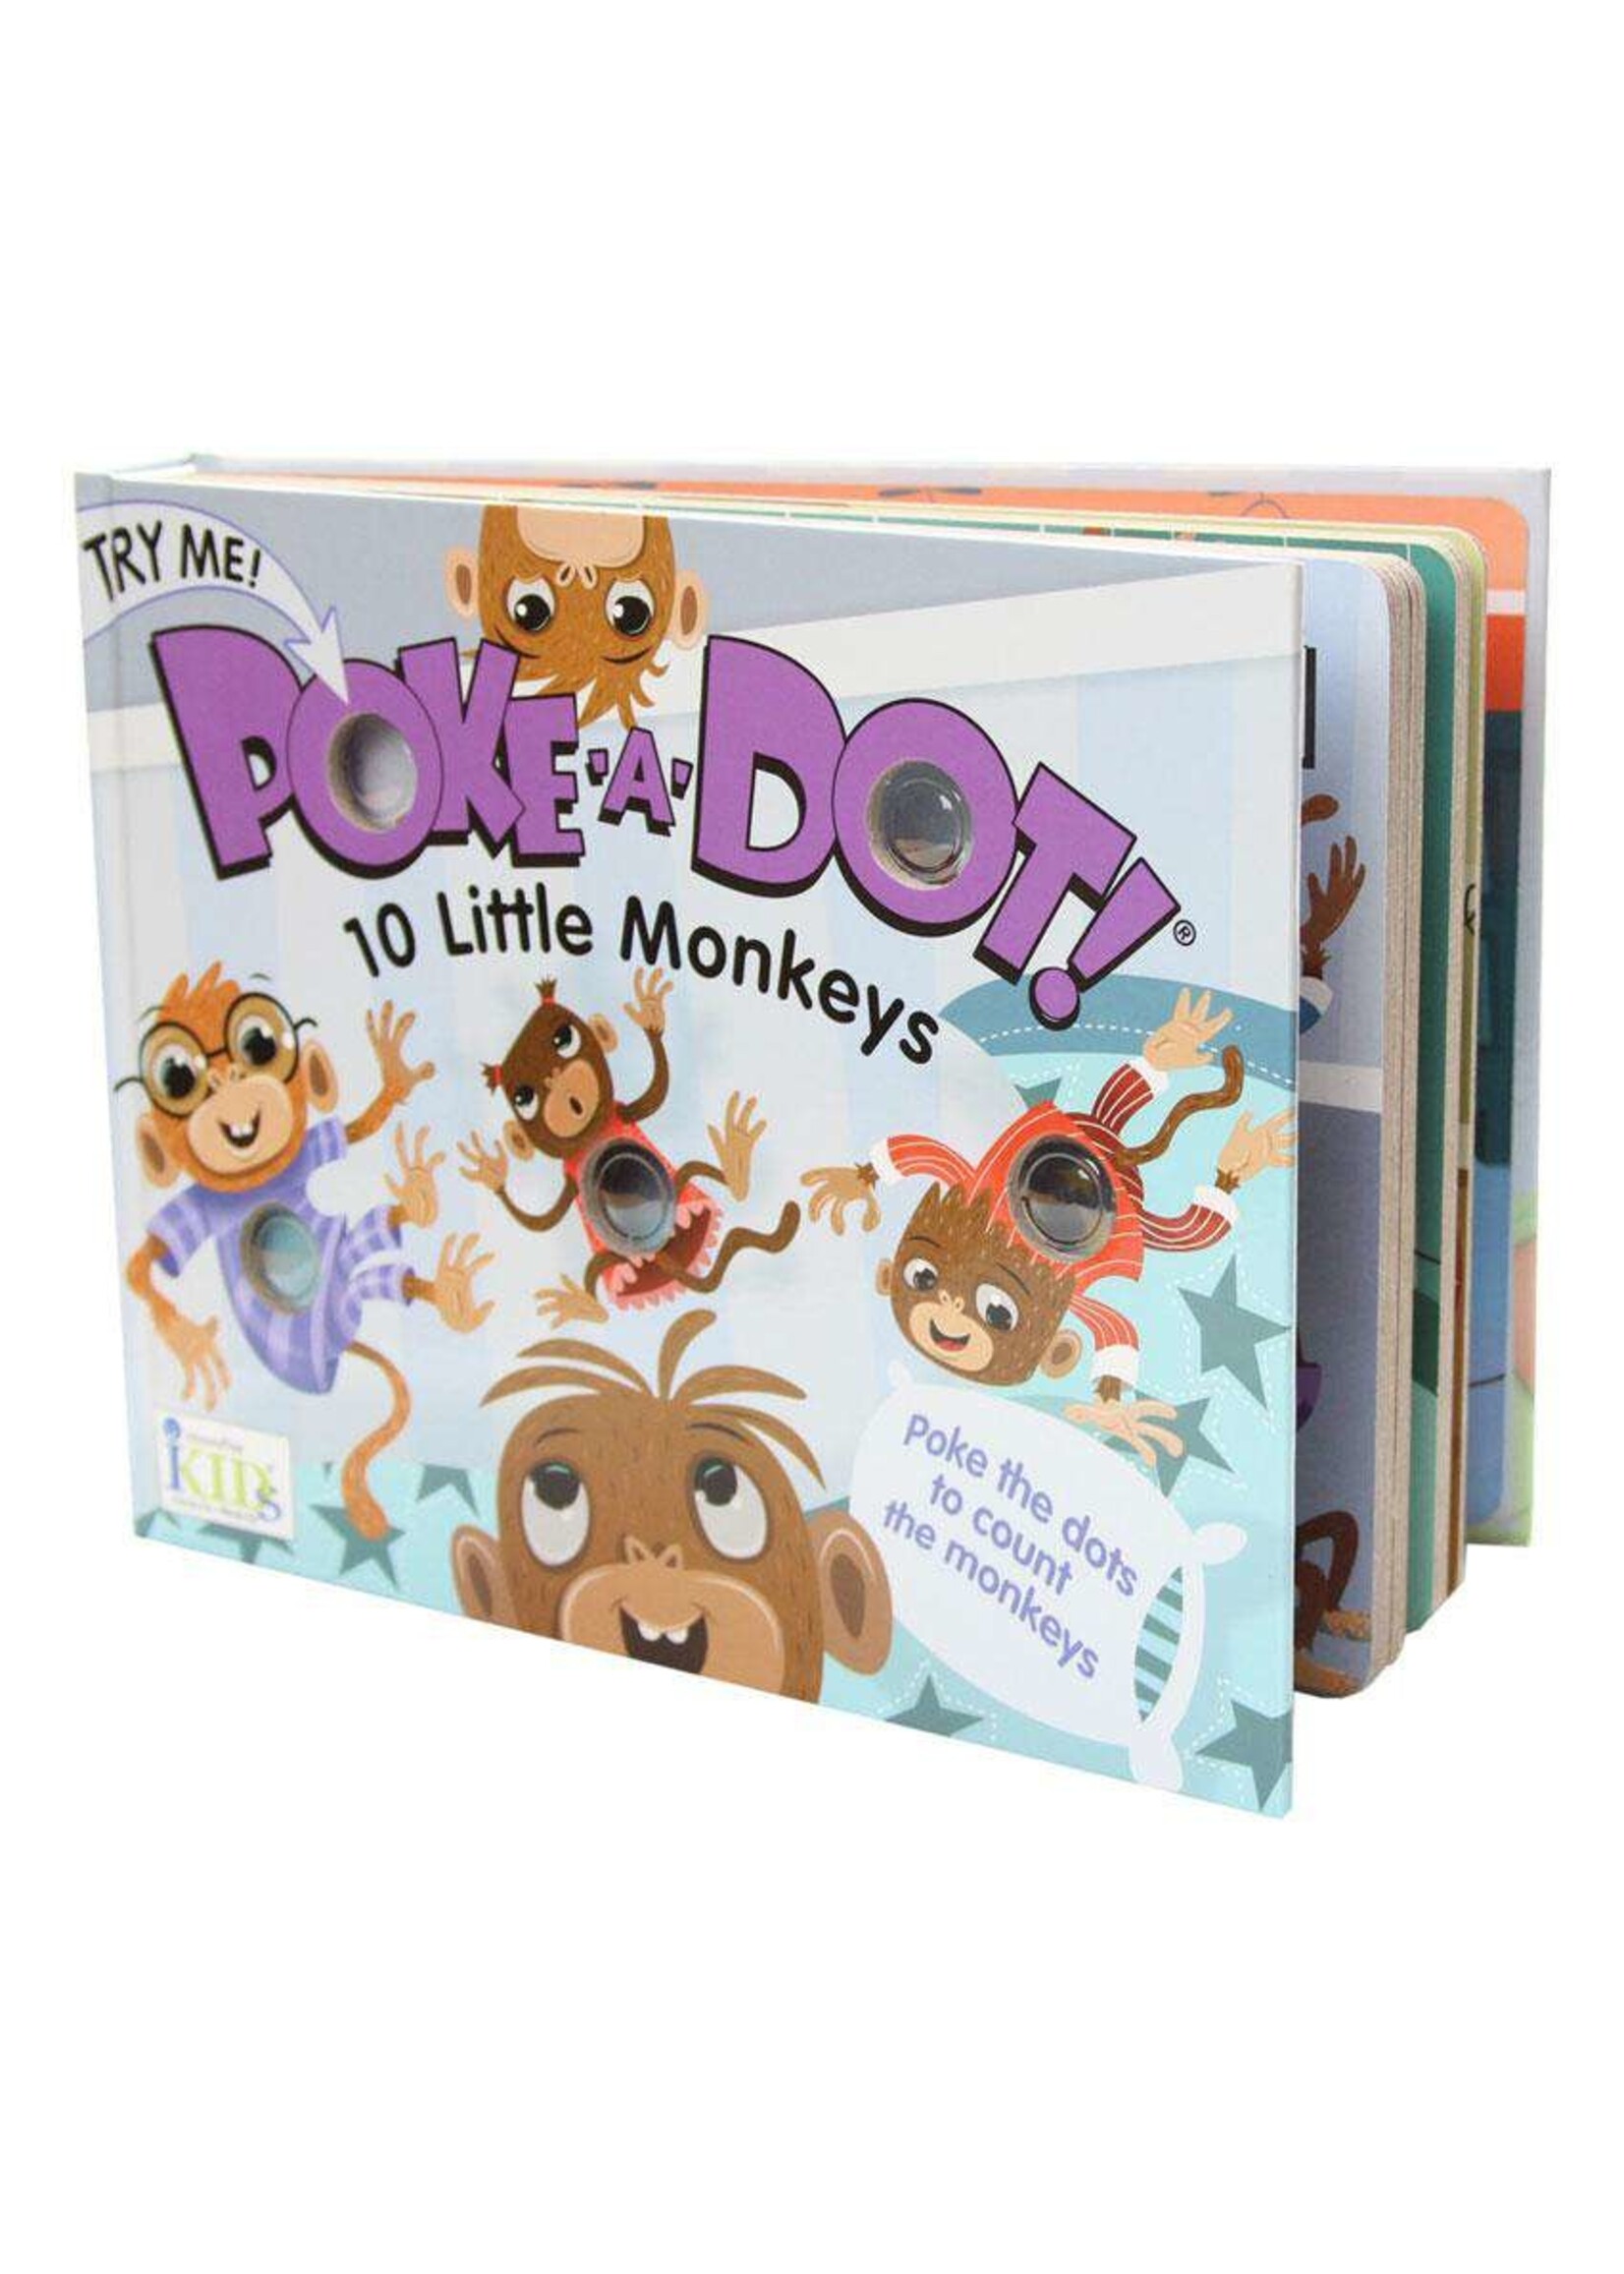 10 Little Monkeys: Poke-a-Dot